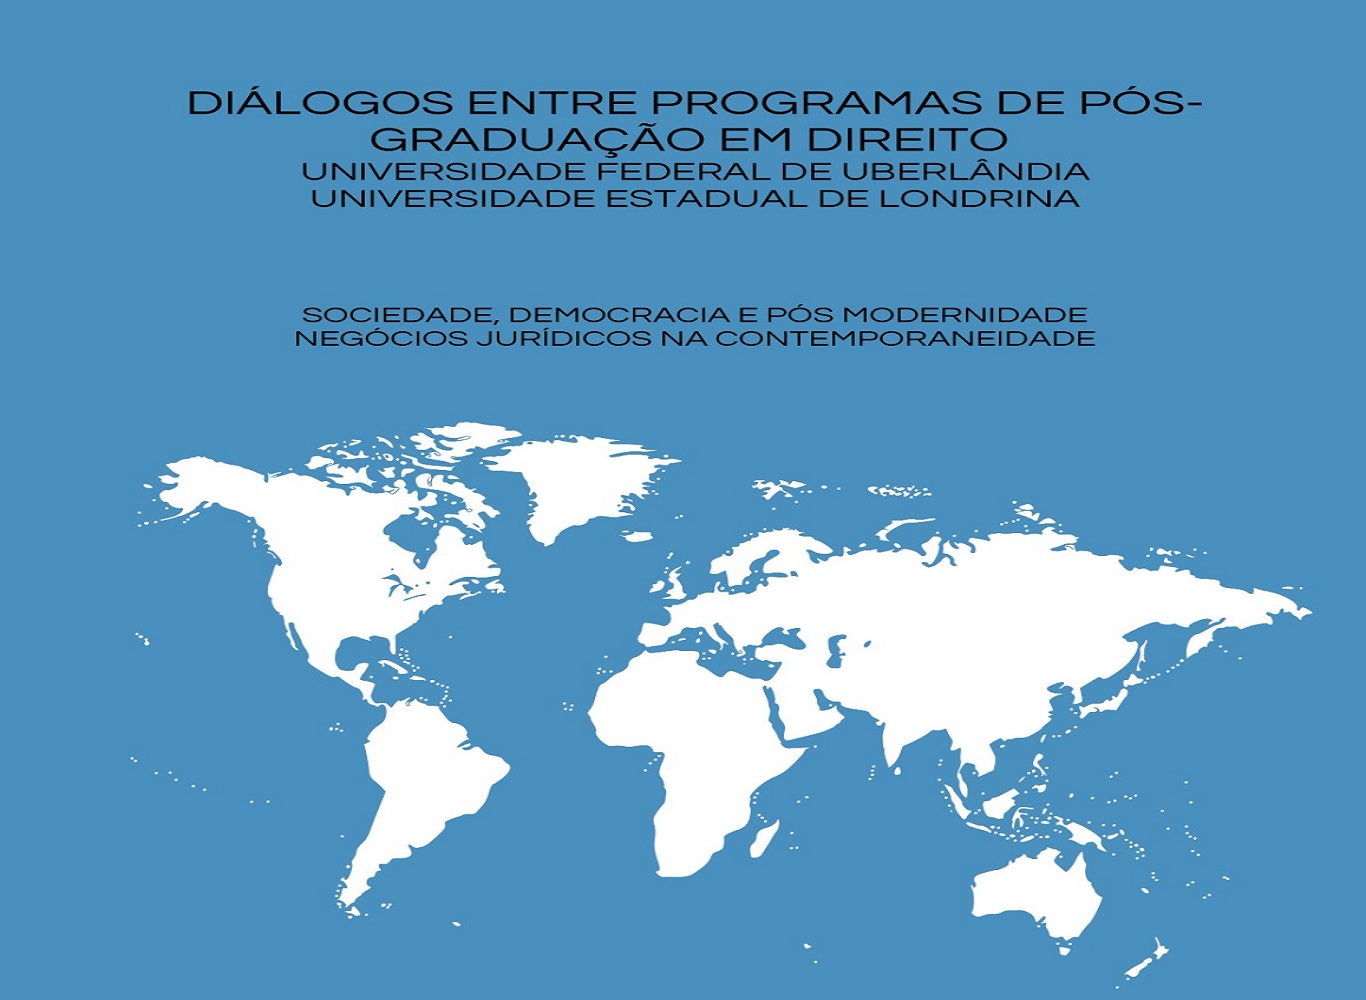 Capa do livro 'Diálogos entre Programas de Pós-Graduação em Direito'